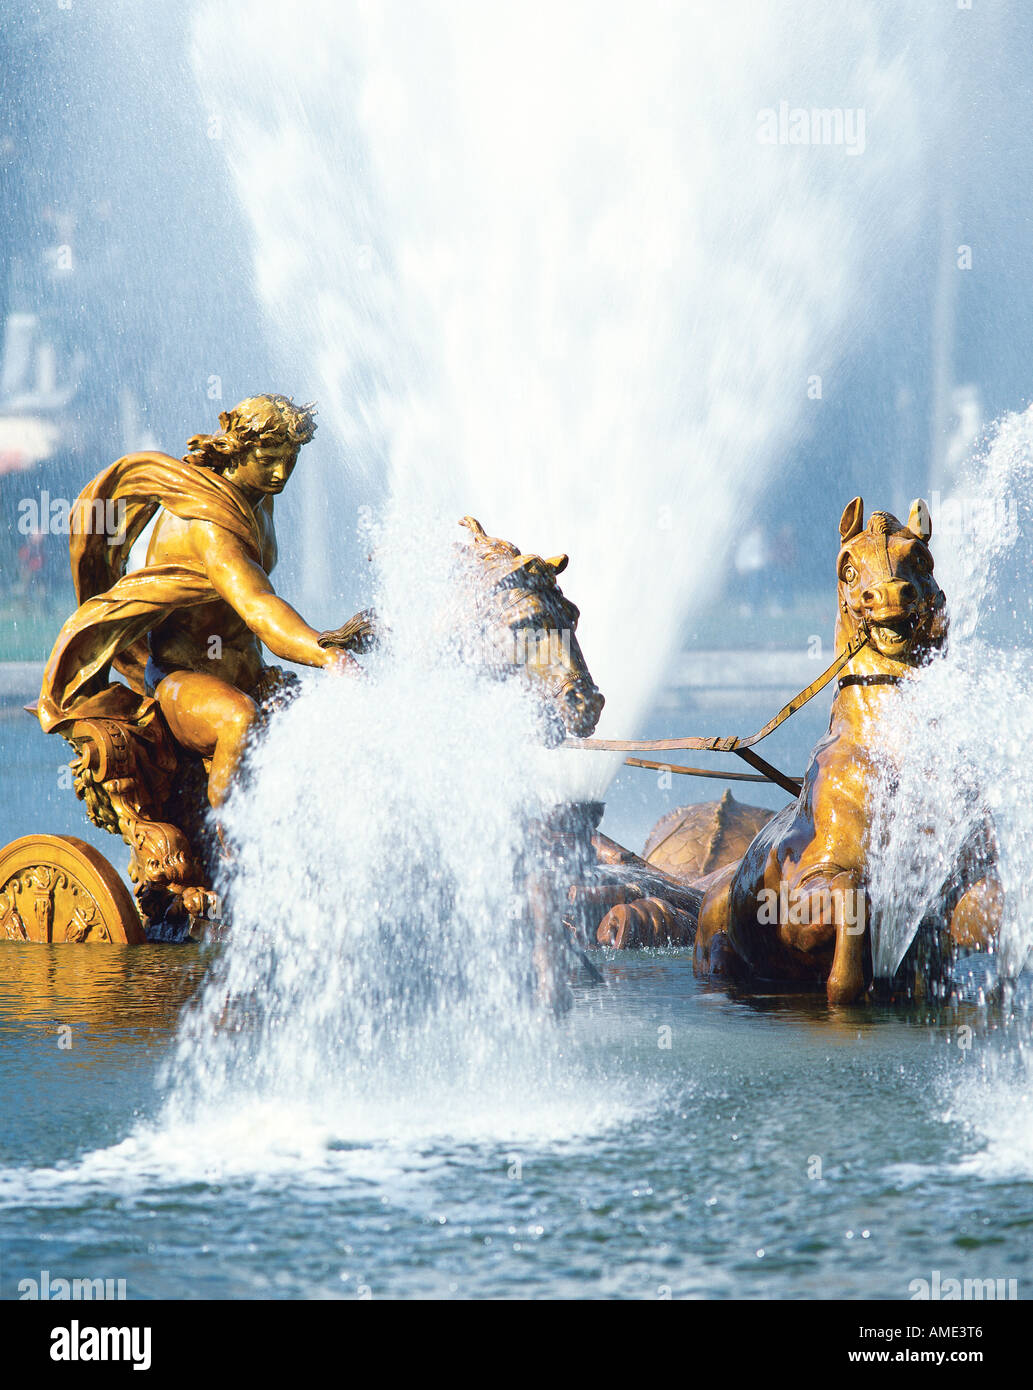 Der Brunnen im Bassin d Apollon eine Murmel spielen gesäumten Becken mit vergoldeten Statuen von Apollo steigt aus dem Wasser auf einem Pferd gezogenen Falle in den formalen Gärten des 17. Jahrhunderts Chateau de Versailles Stockfoto